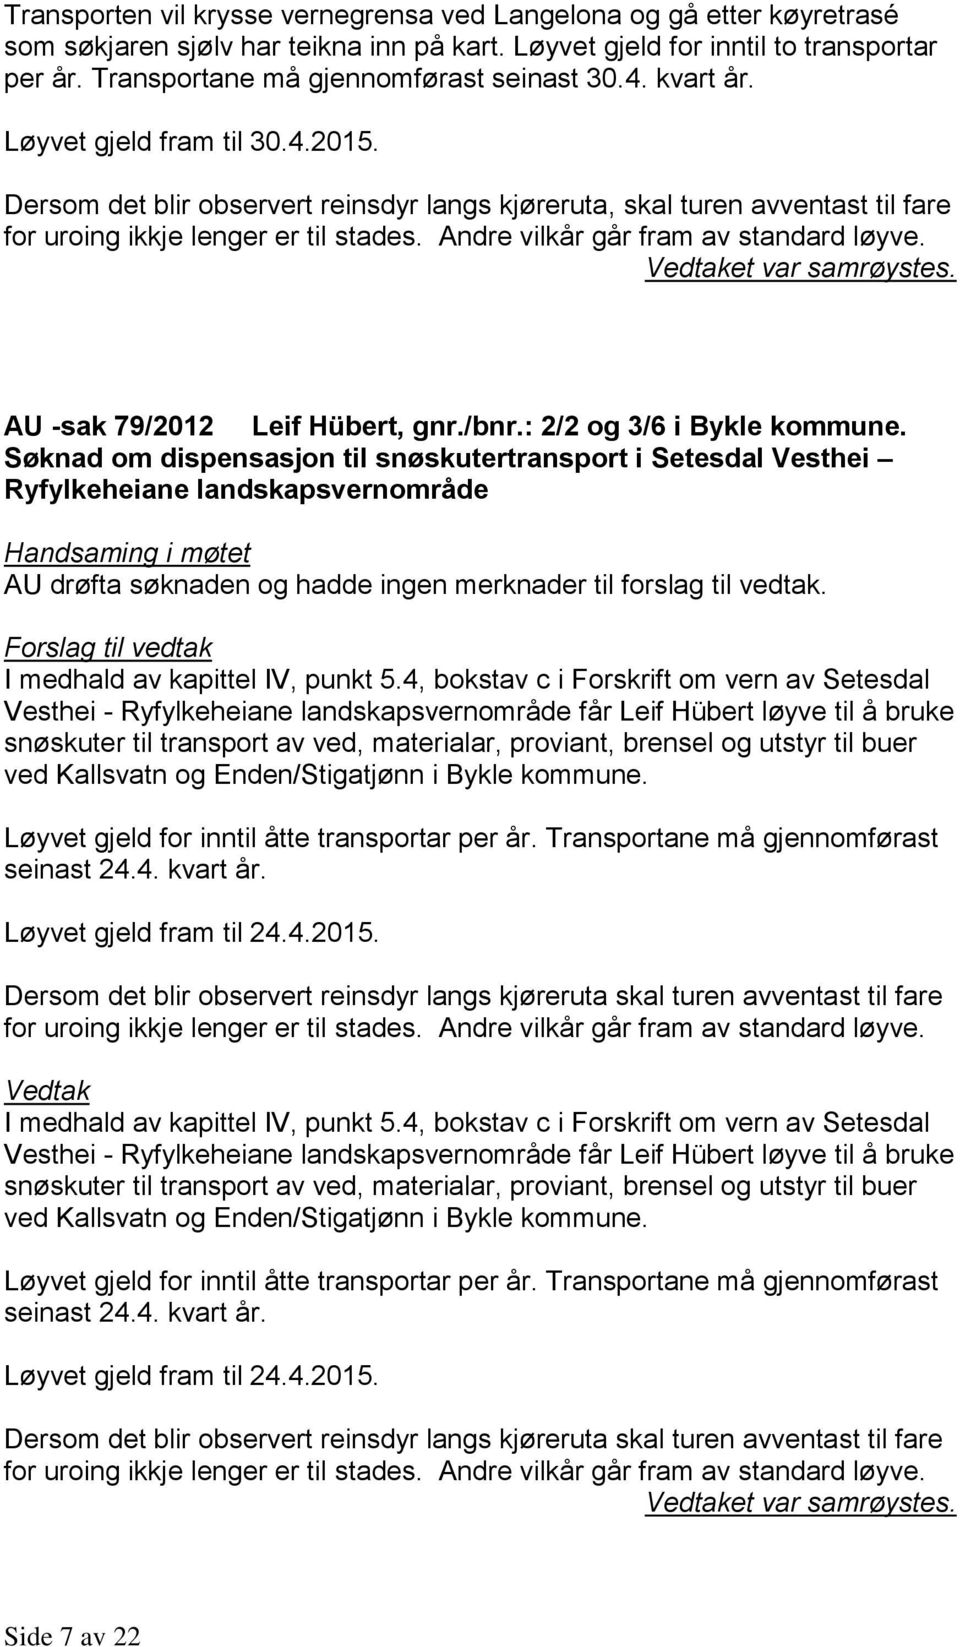 AU -sak 79/2012 Leif Hübert, gnr./bnr.: 2/2 og 3/6 i Bykle kommune.